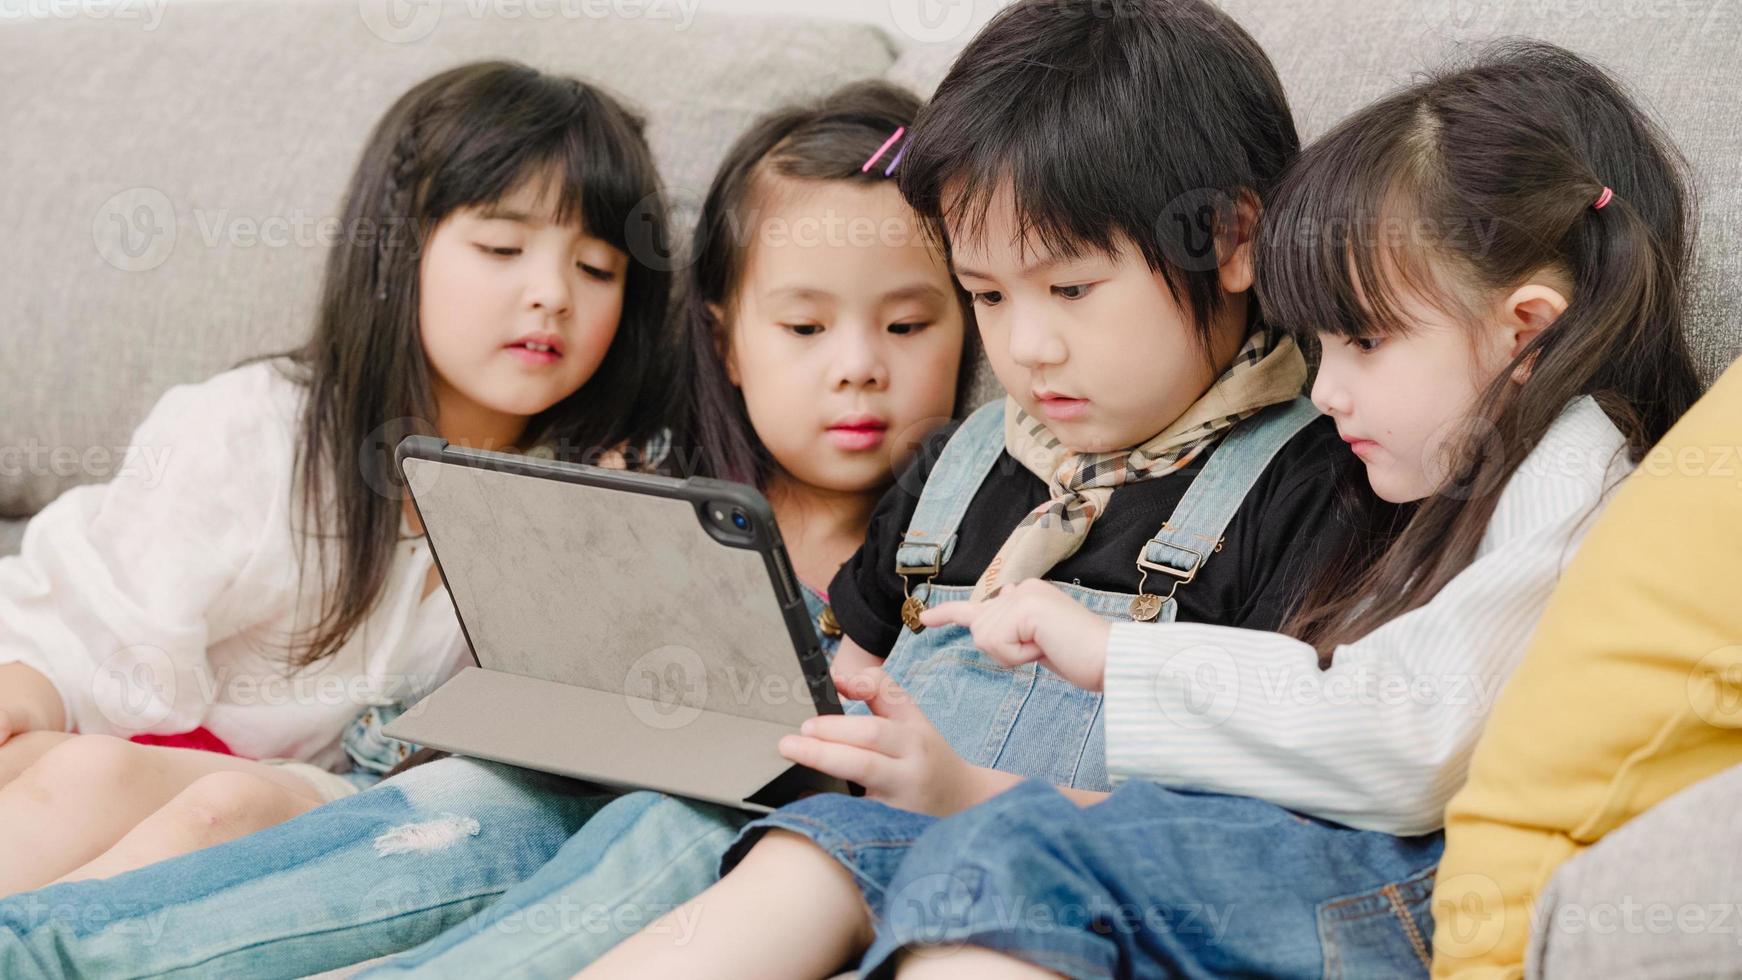 groupe d'enfants utilisant une tablette en classe, jeunes garçons et filles multiethniques heureux d'utiliser la technologie pour étudier et jouer à des jeux à l'école primaire. les enfants utilisent la technologie pour le concept d'éducation. photo